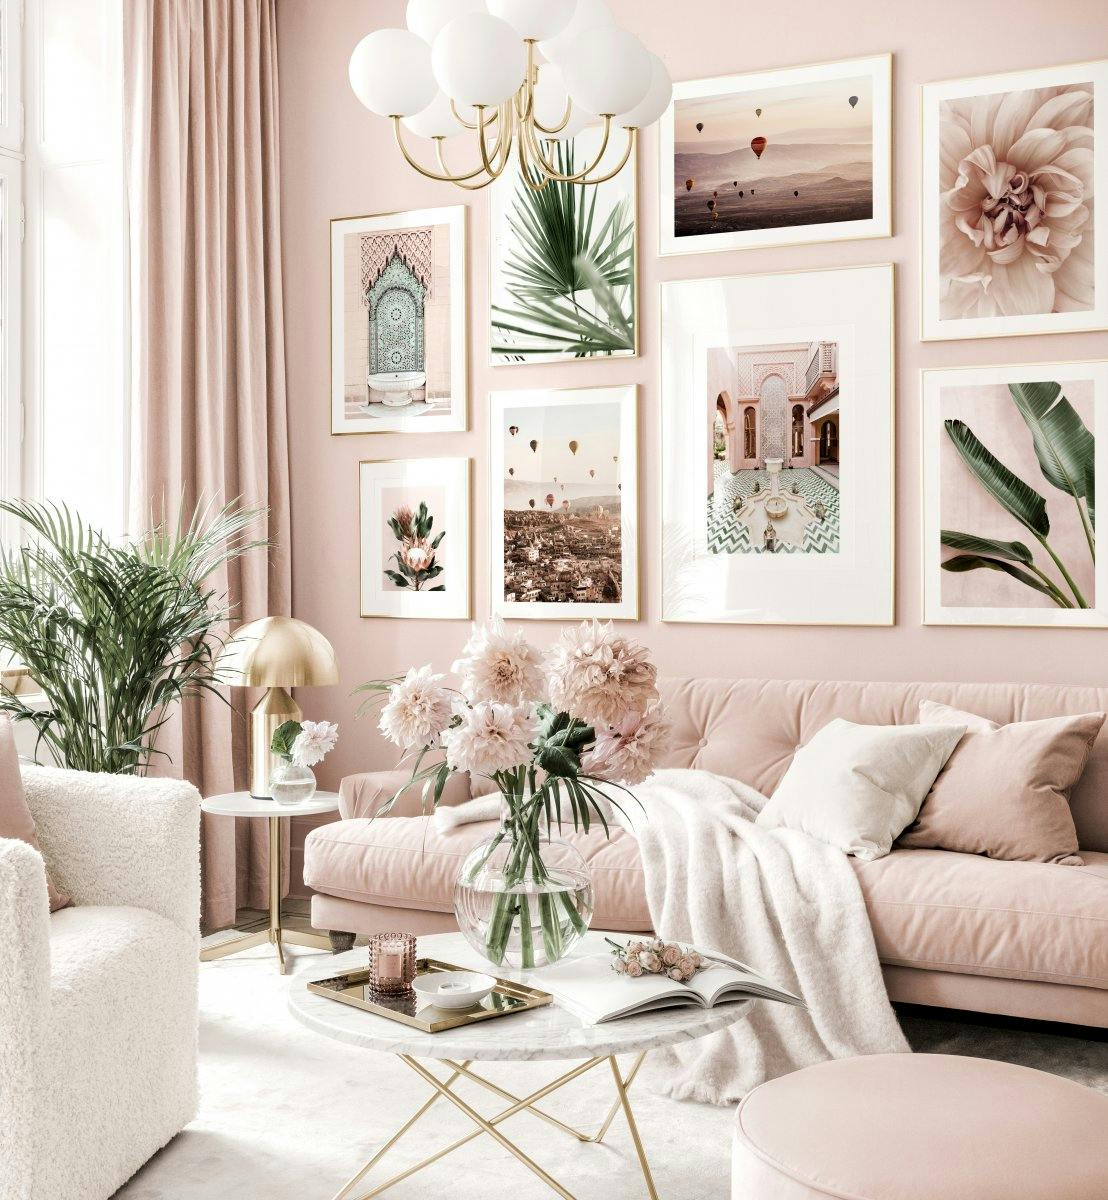 Galleria a parete trendy rosa salotto poster botanici e cornici dorate